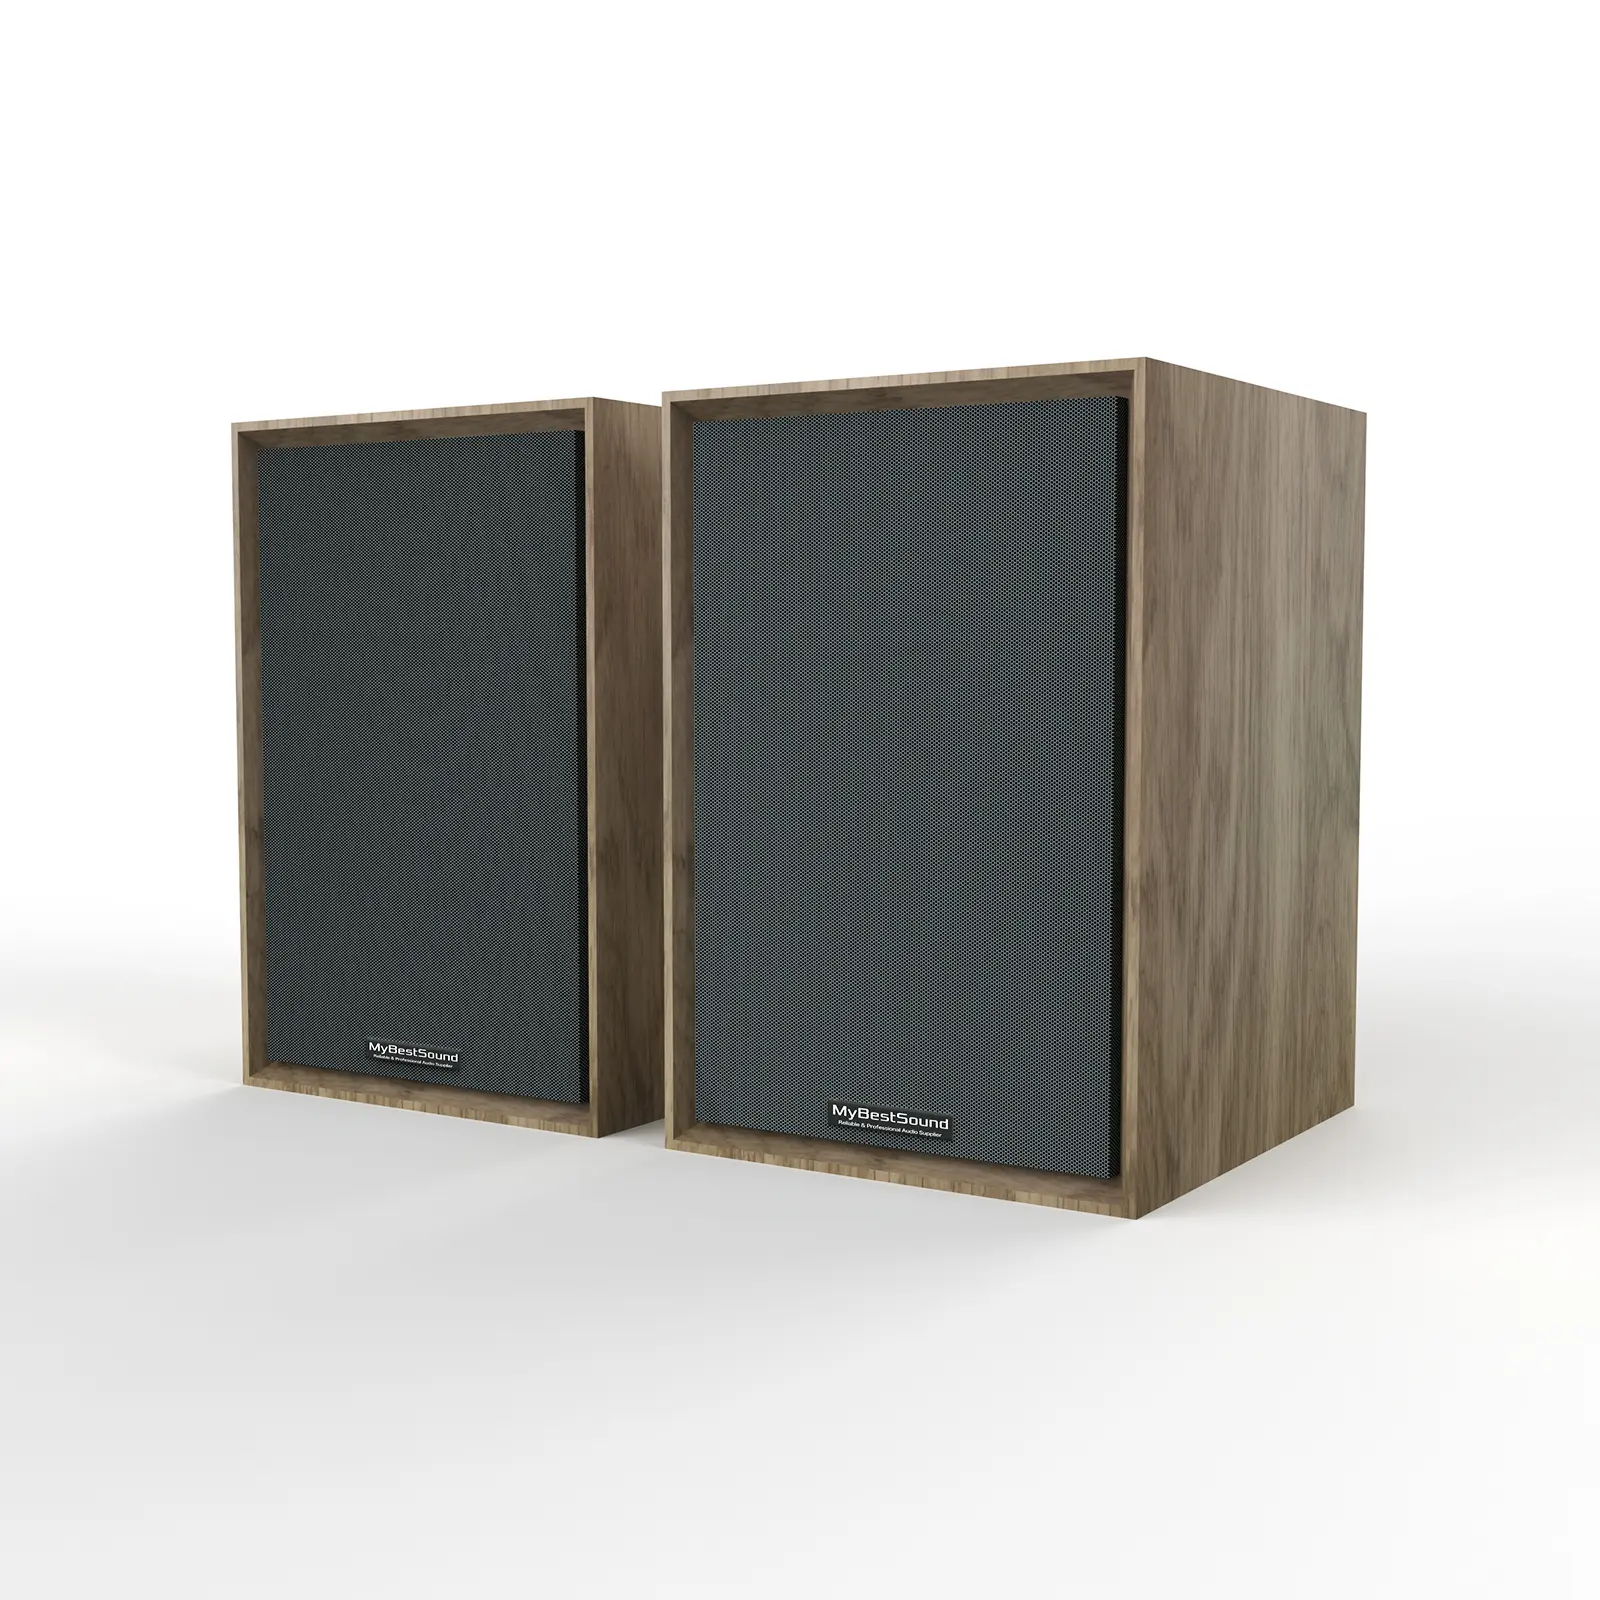 SR04B 60W bookshelf speaker Hand-made wooden housing with Multiple Input ports speaker